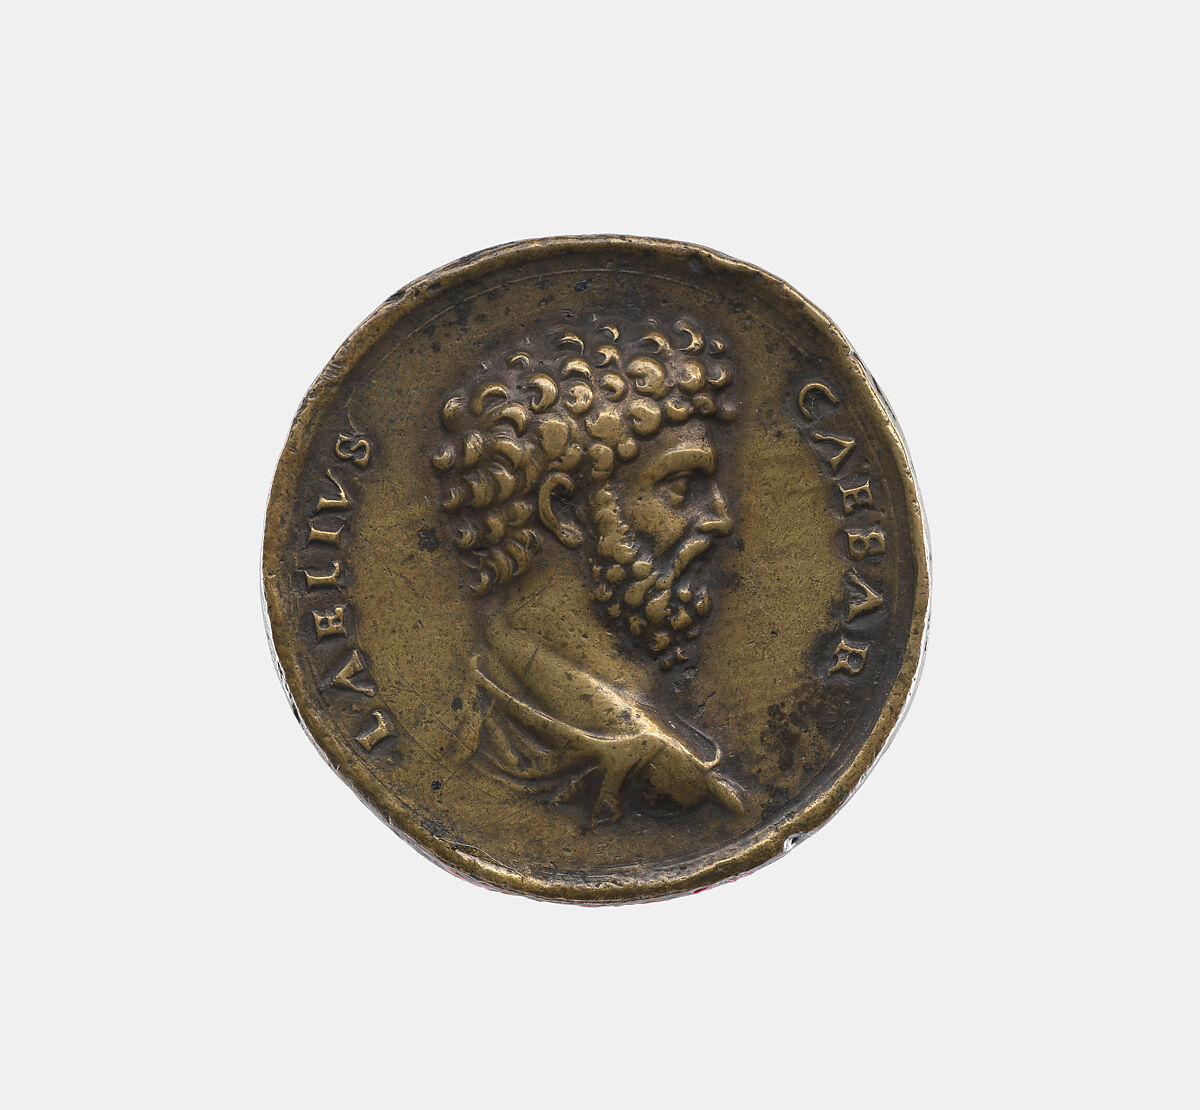 Emperor Aelius A.D. 138, adopted son of Emperor Hadrian, Valerio Belli (Il Vicentino) (1468–1546), Bronze, Italian, Padua 